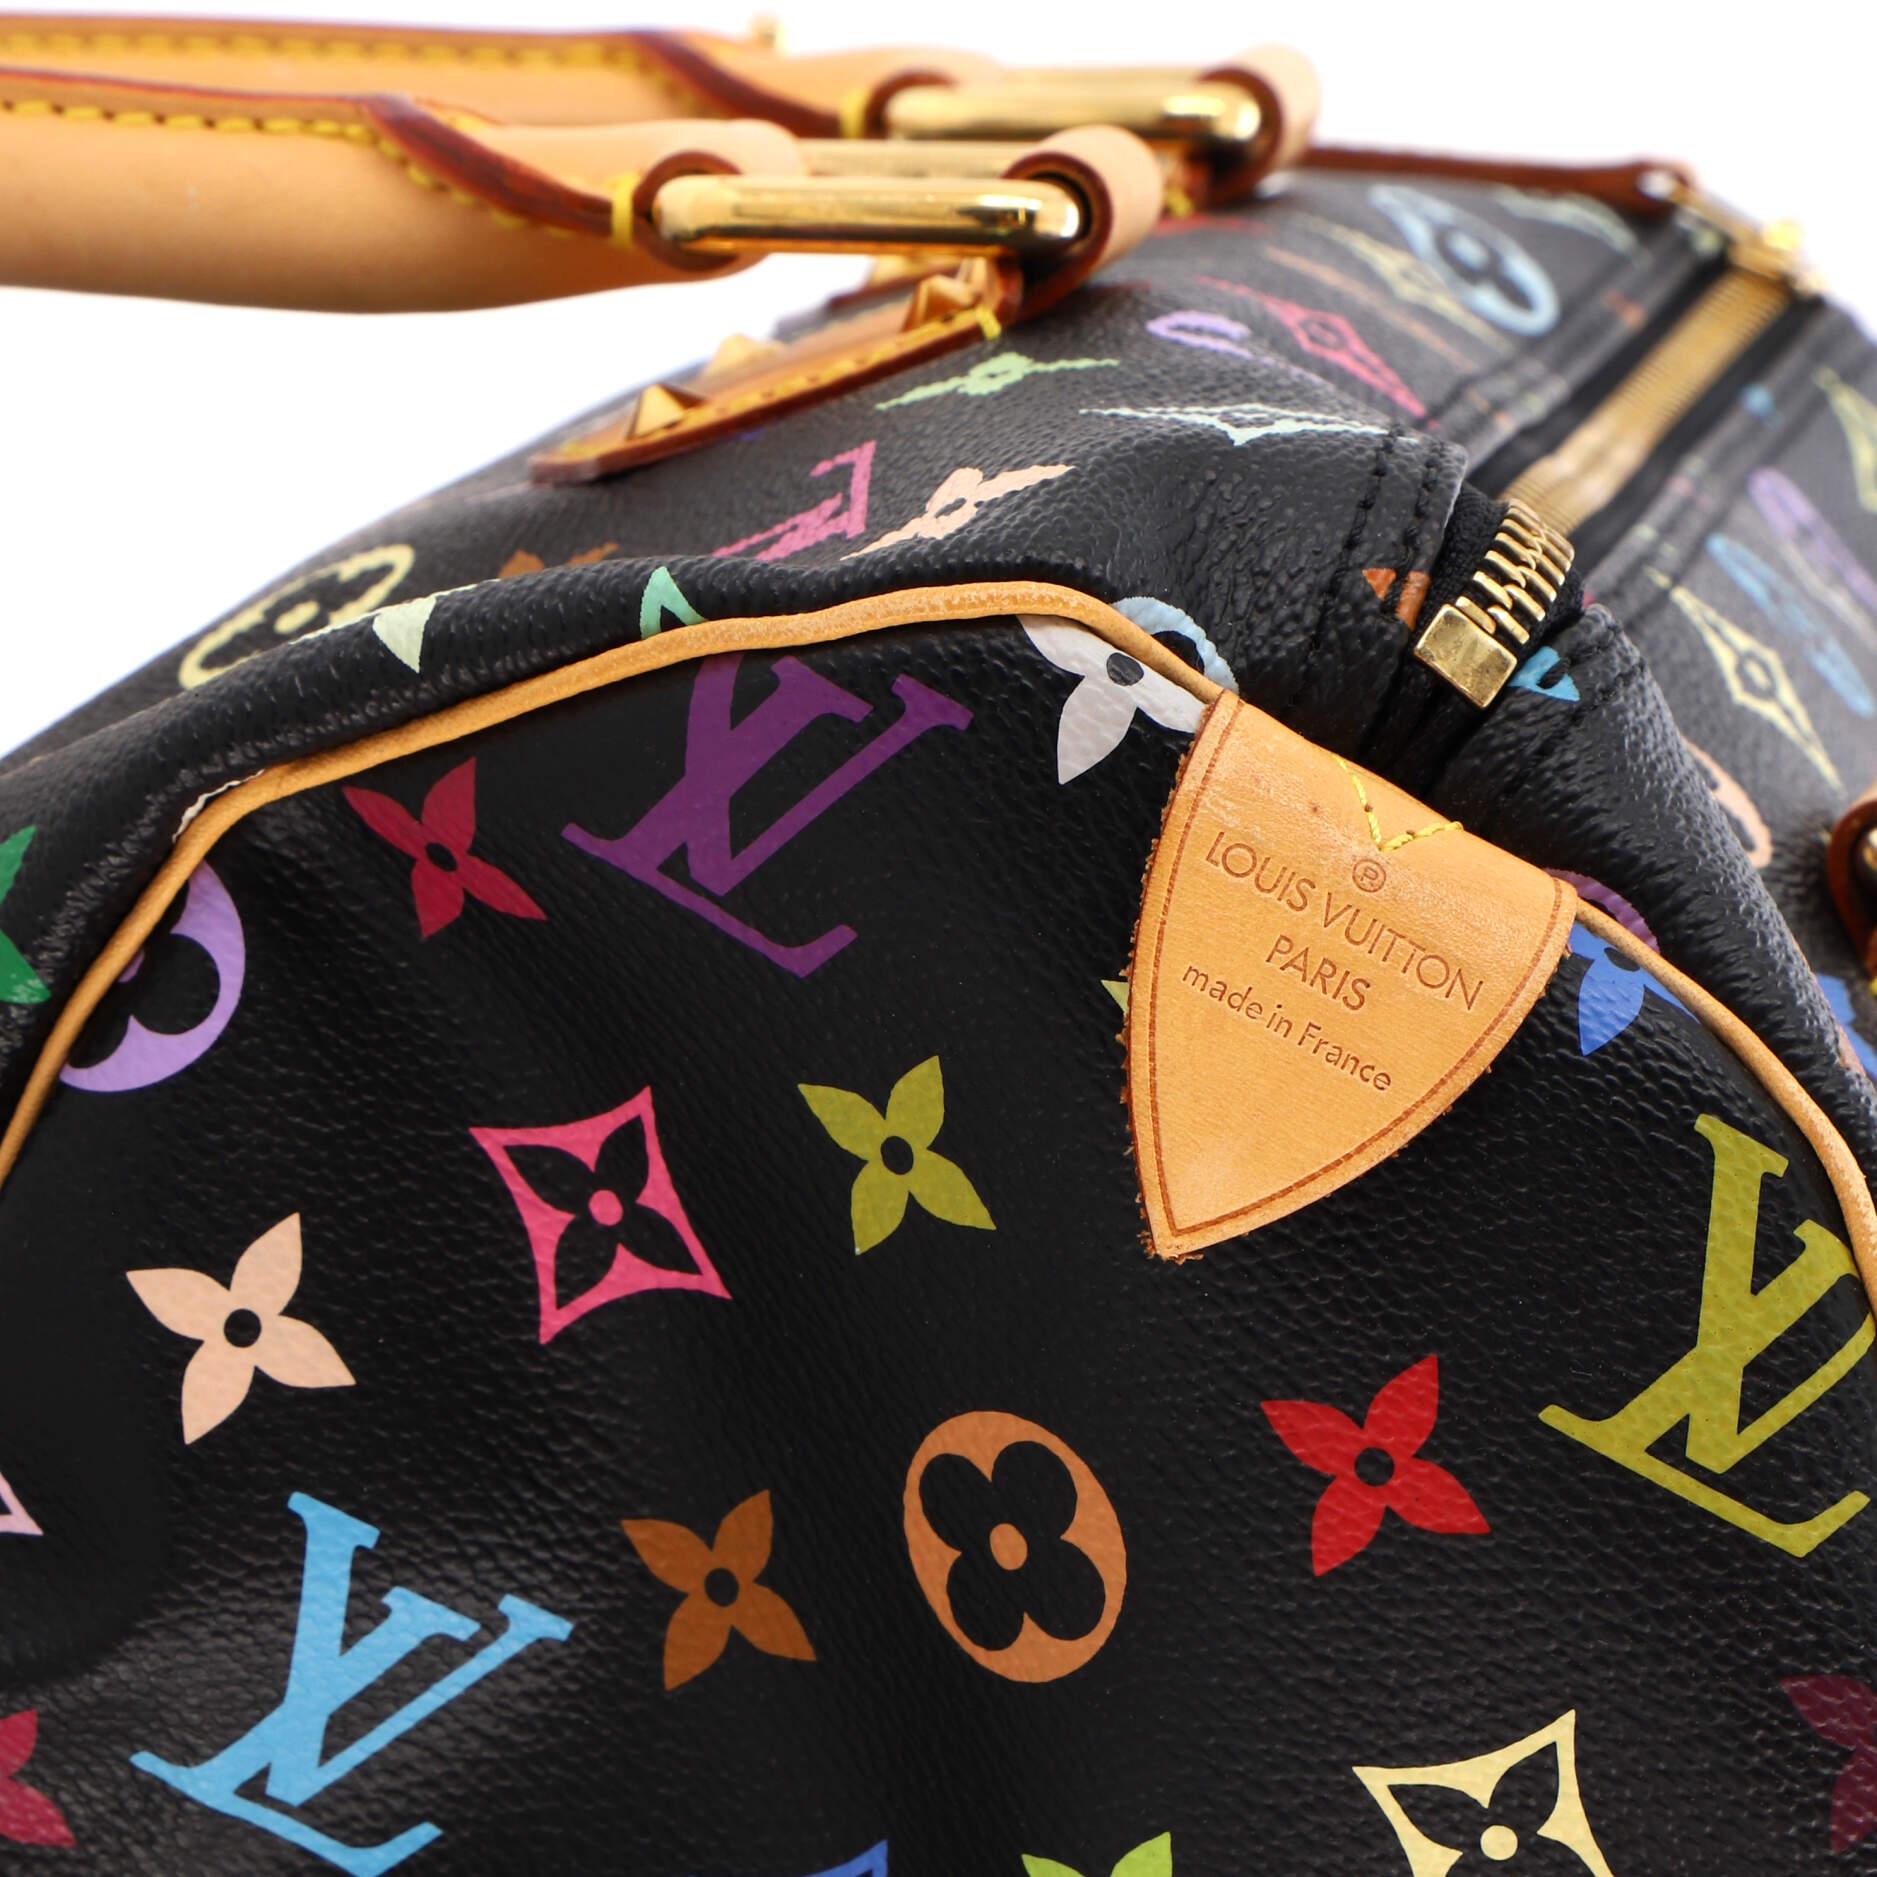 Louis Vuitton Speedy Handbag Monogram Multicolor 30 5